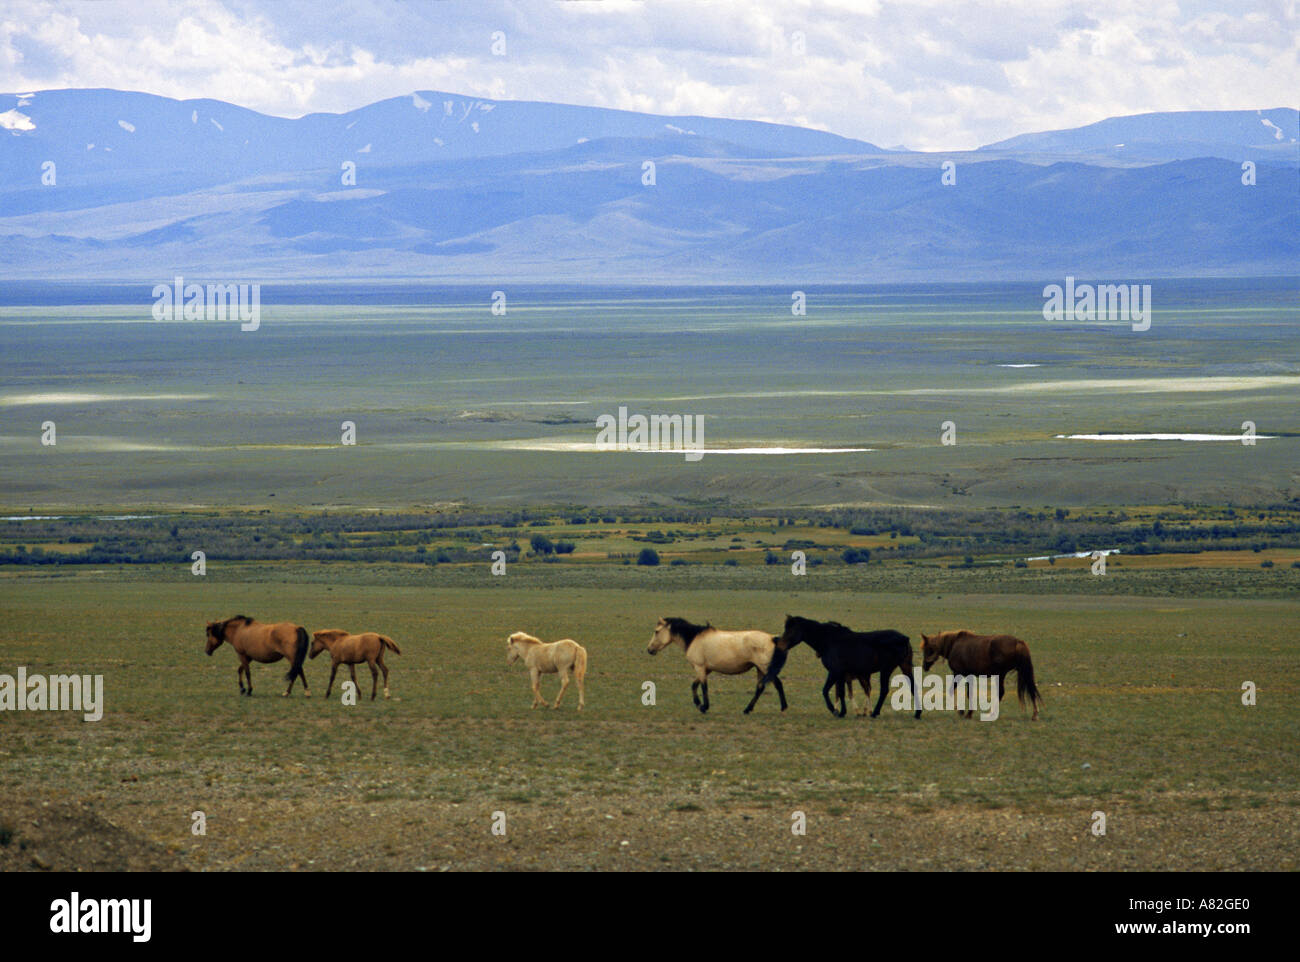 Pferde in der Steppe, Altai, Russland Stockfotografie - Alamy